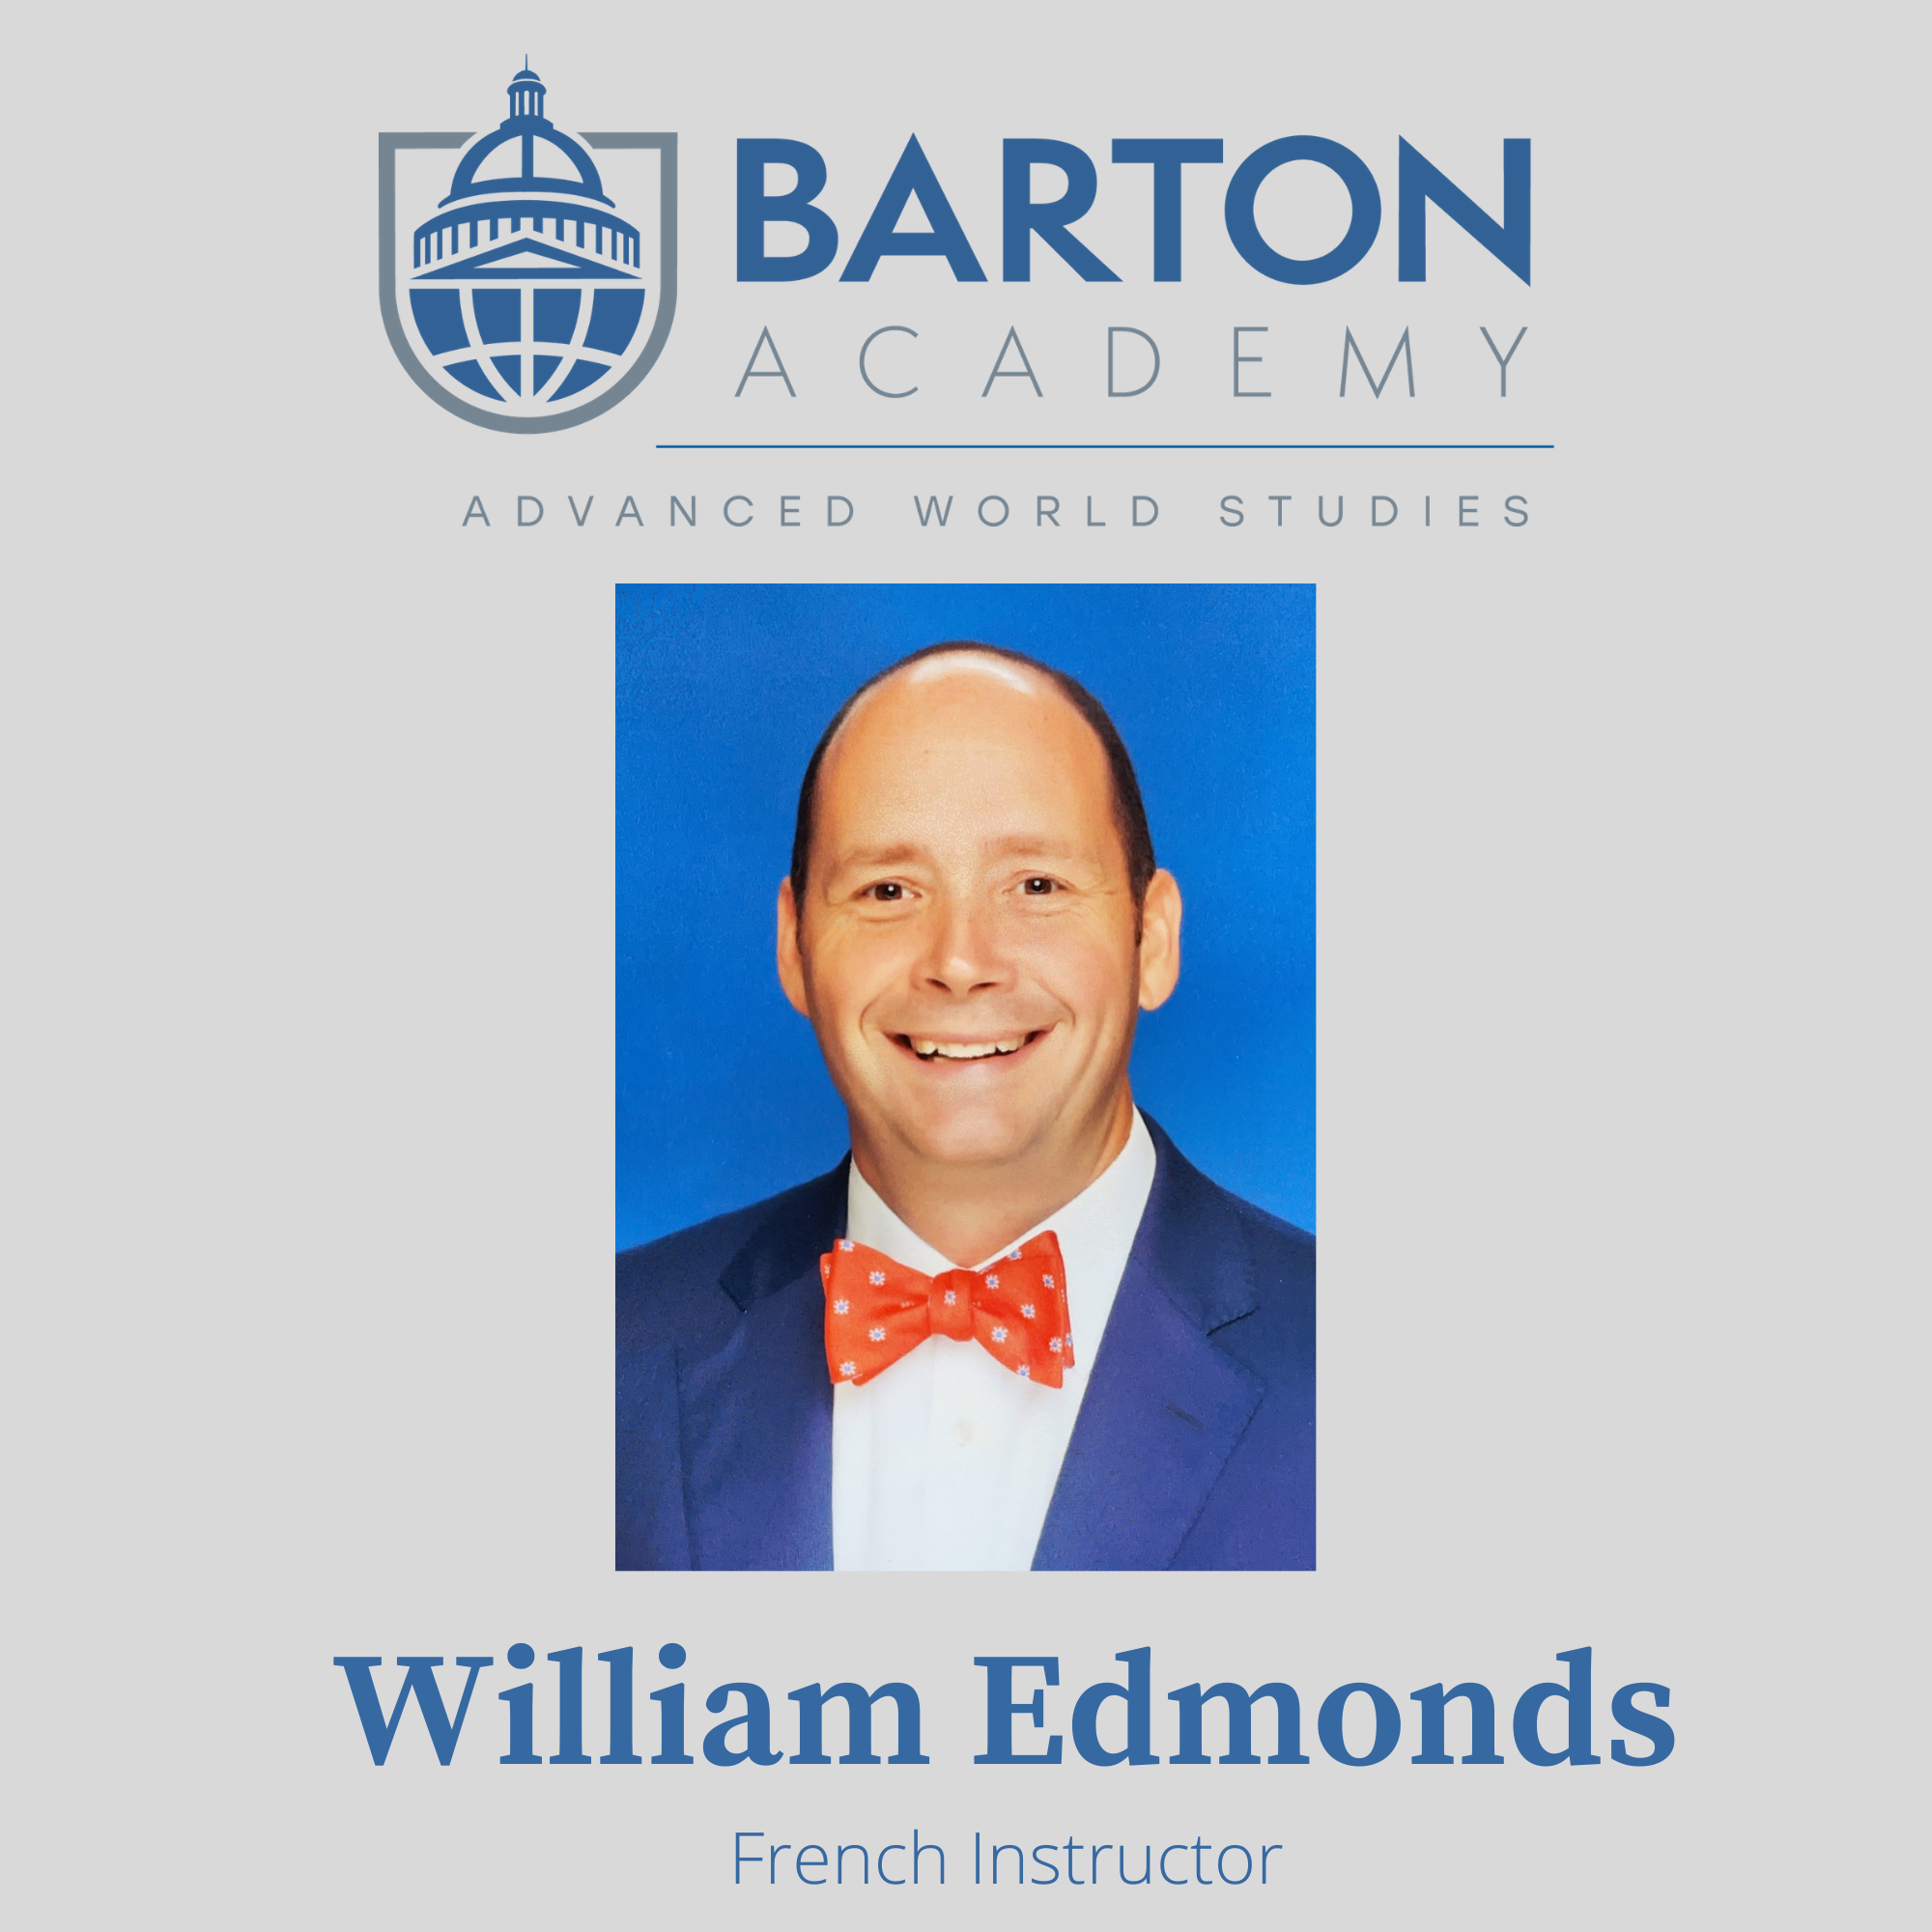 William Edmonds